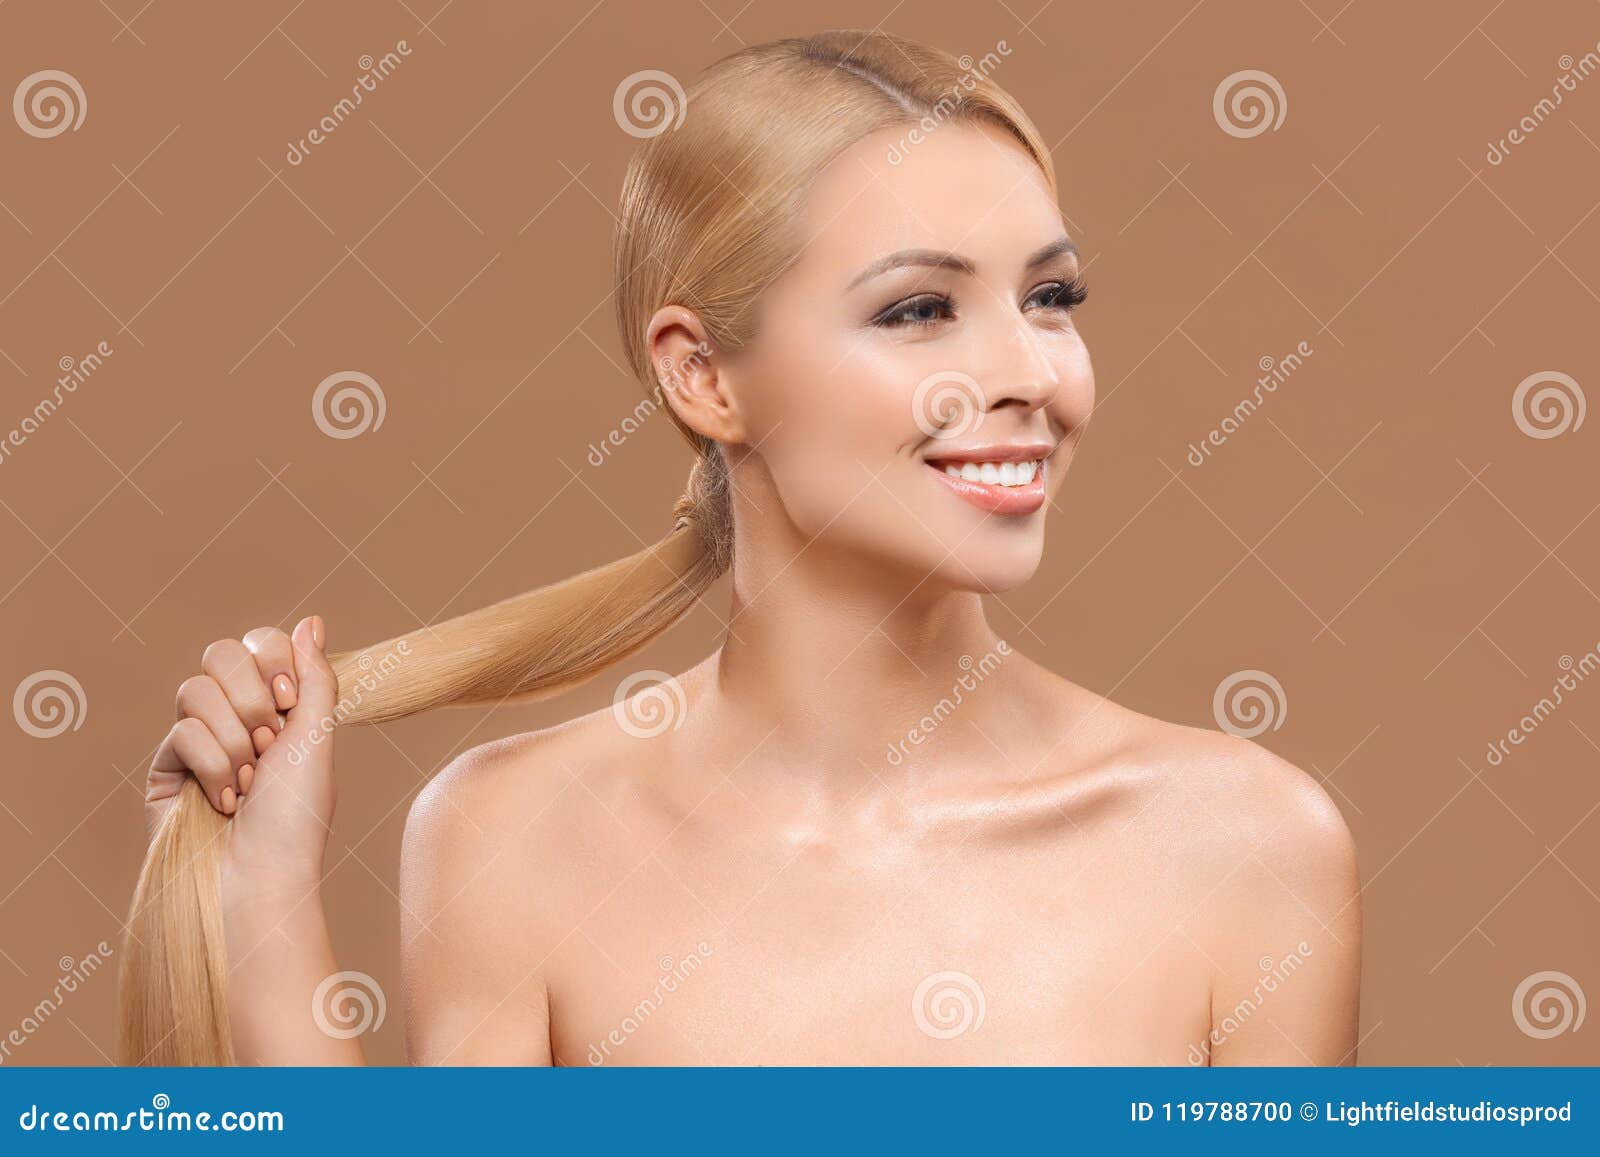 Long Blonde Hair Nude